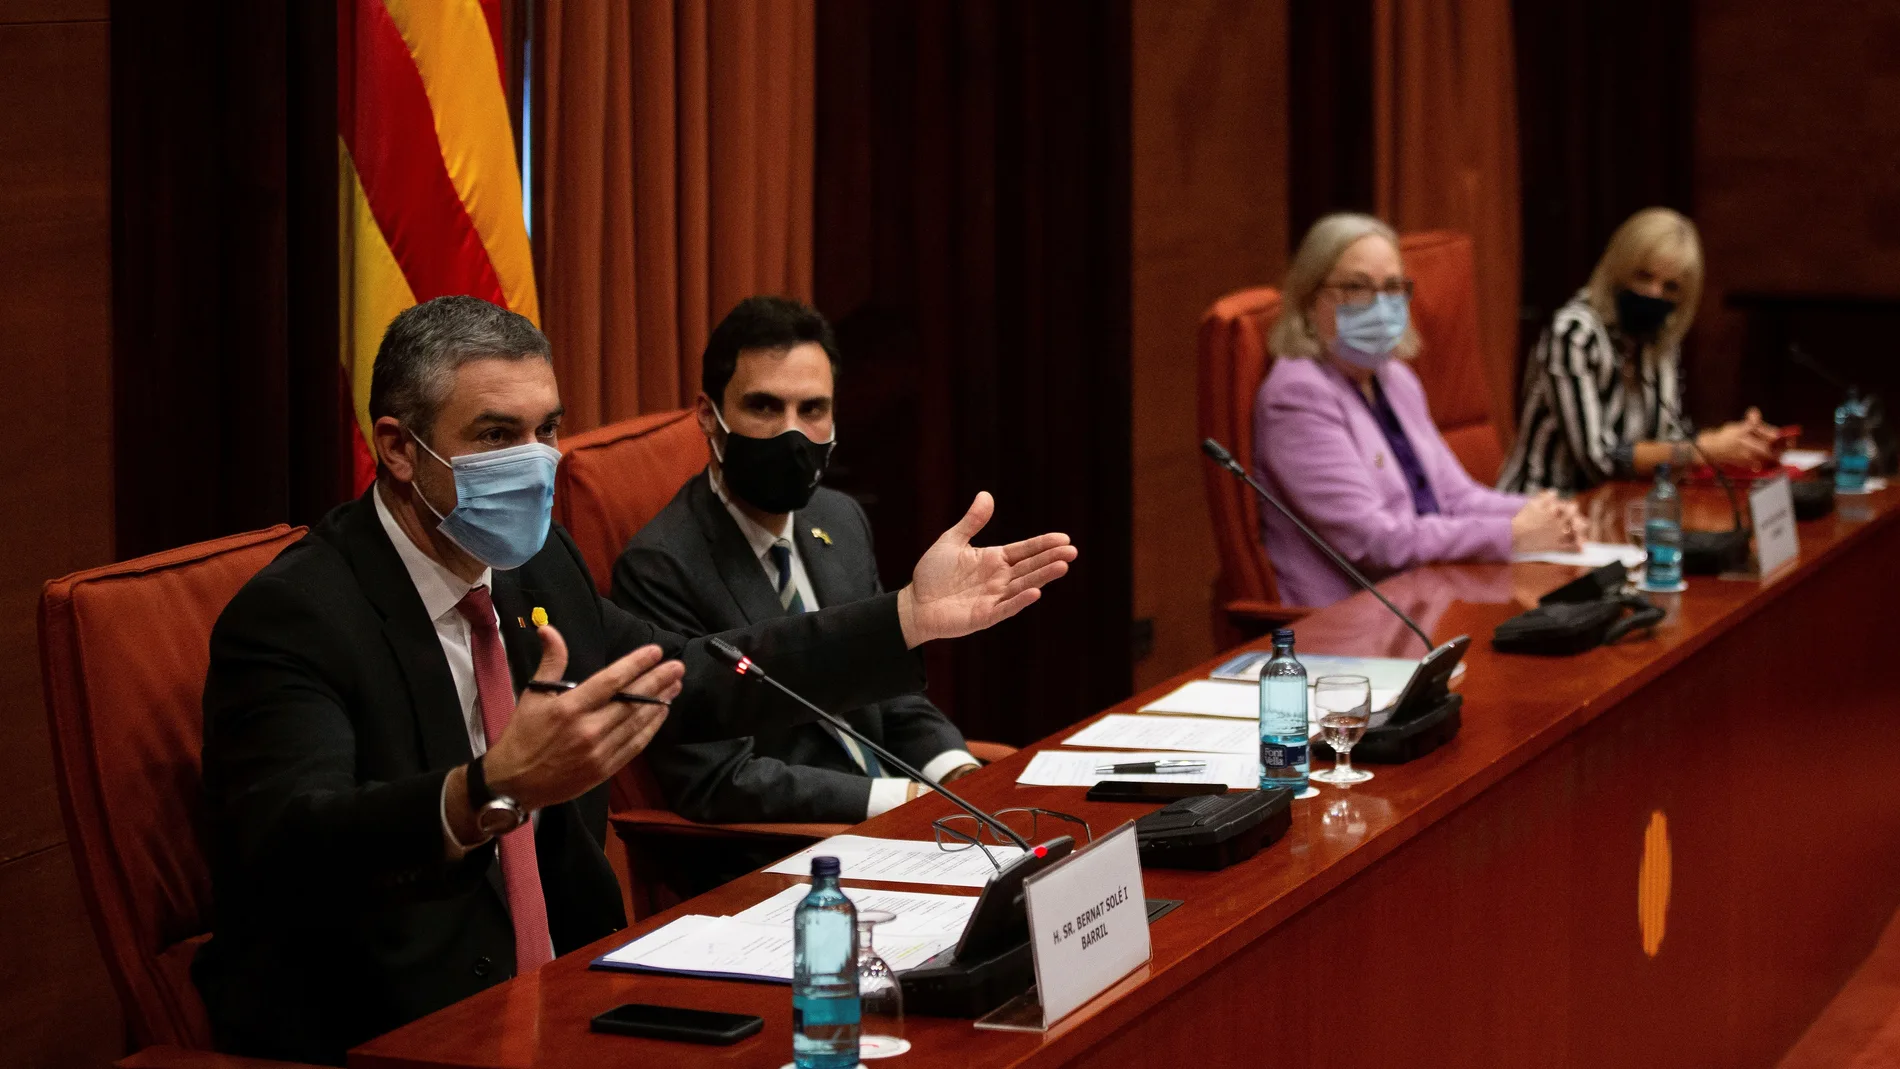 El presidente del Parlament de Cataluña, Roger Torrent, junto al conseller de Acción Exterior, Bernat Solé, en el Parlament.